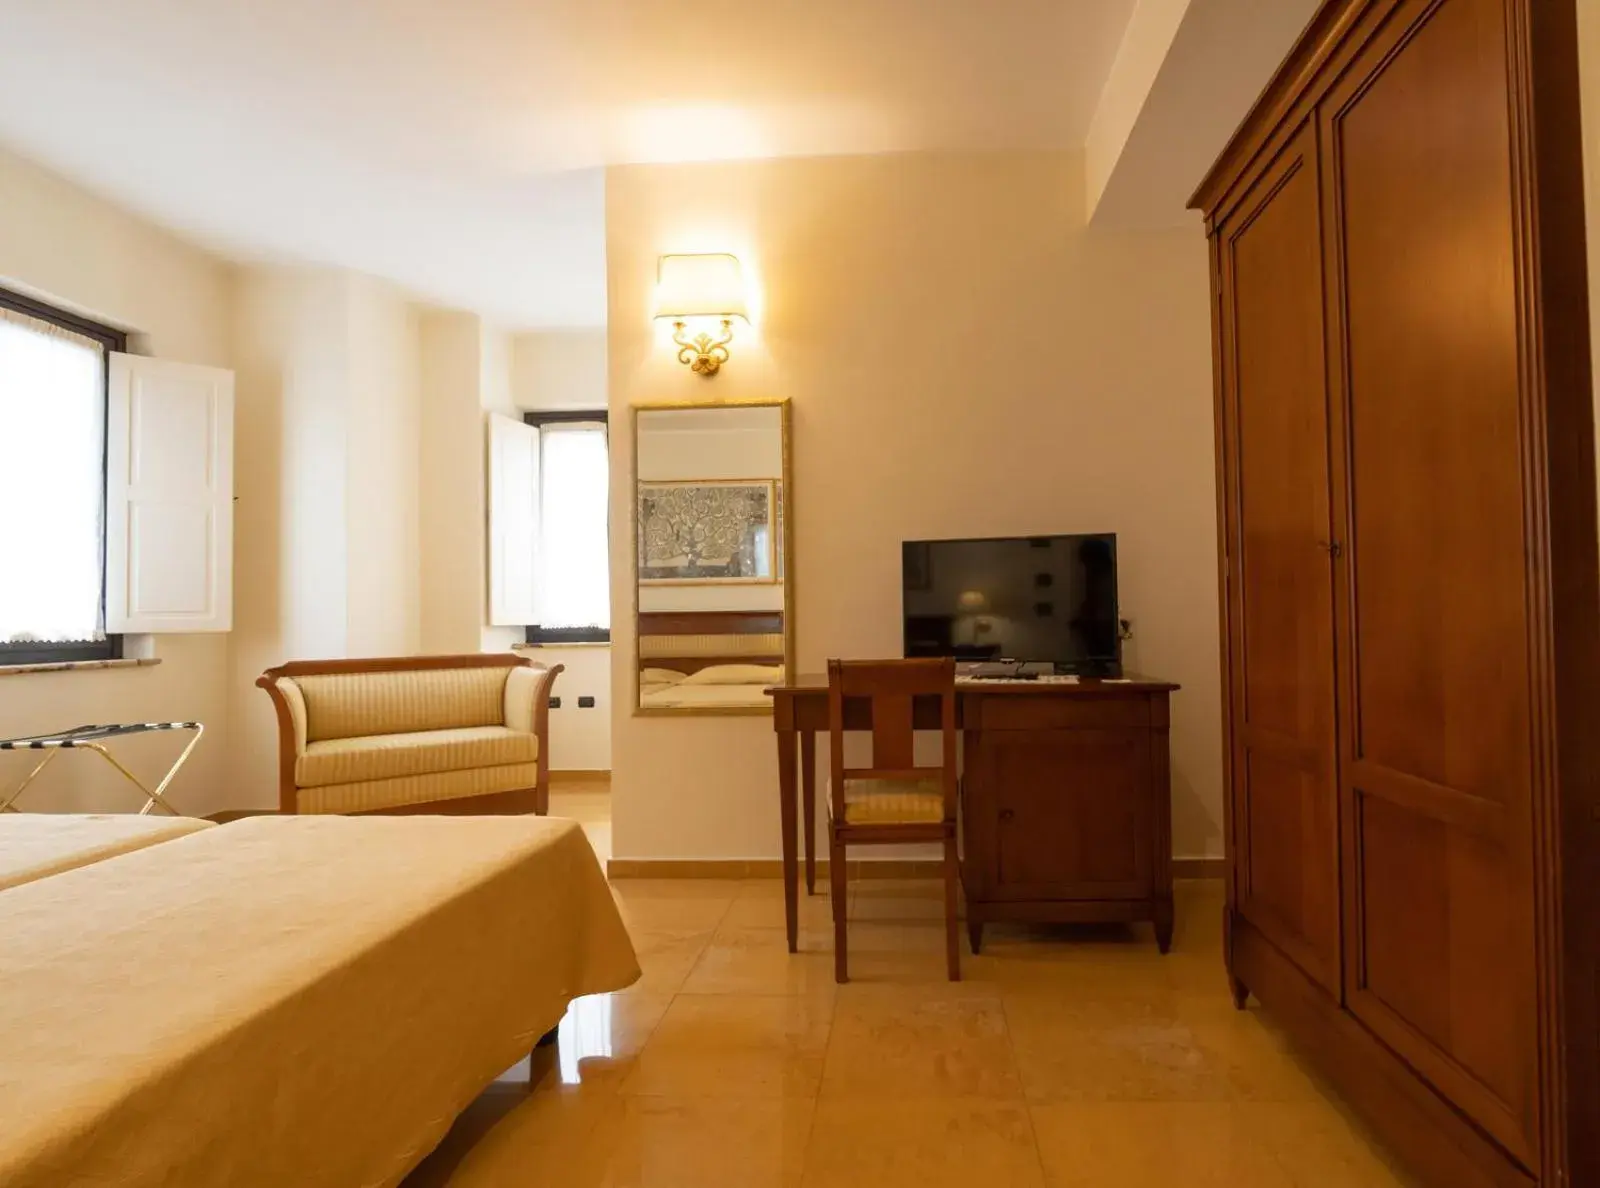 Bedroom, TV/Entertainment Center in Hotel Ristorante Vecchia Vibo